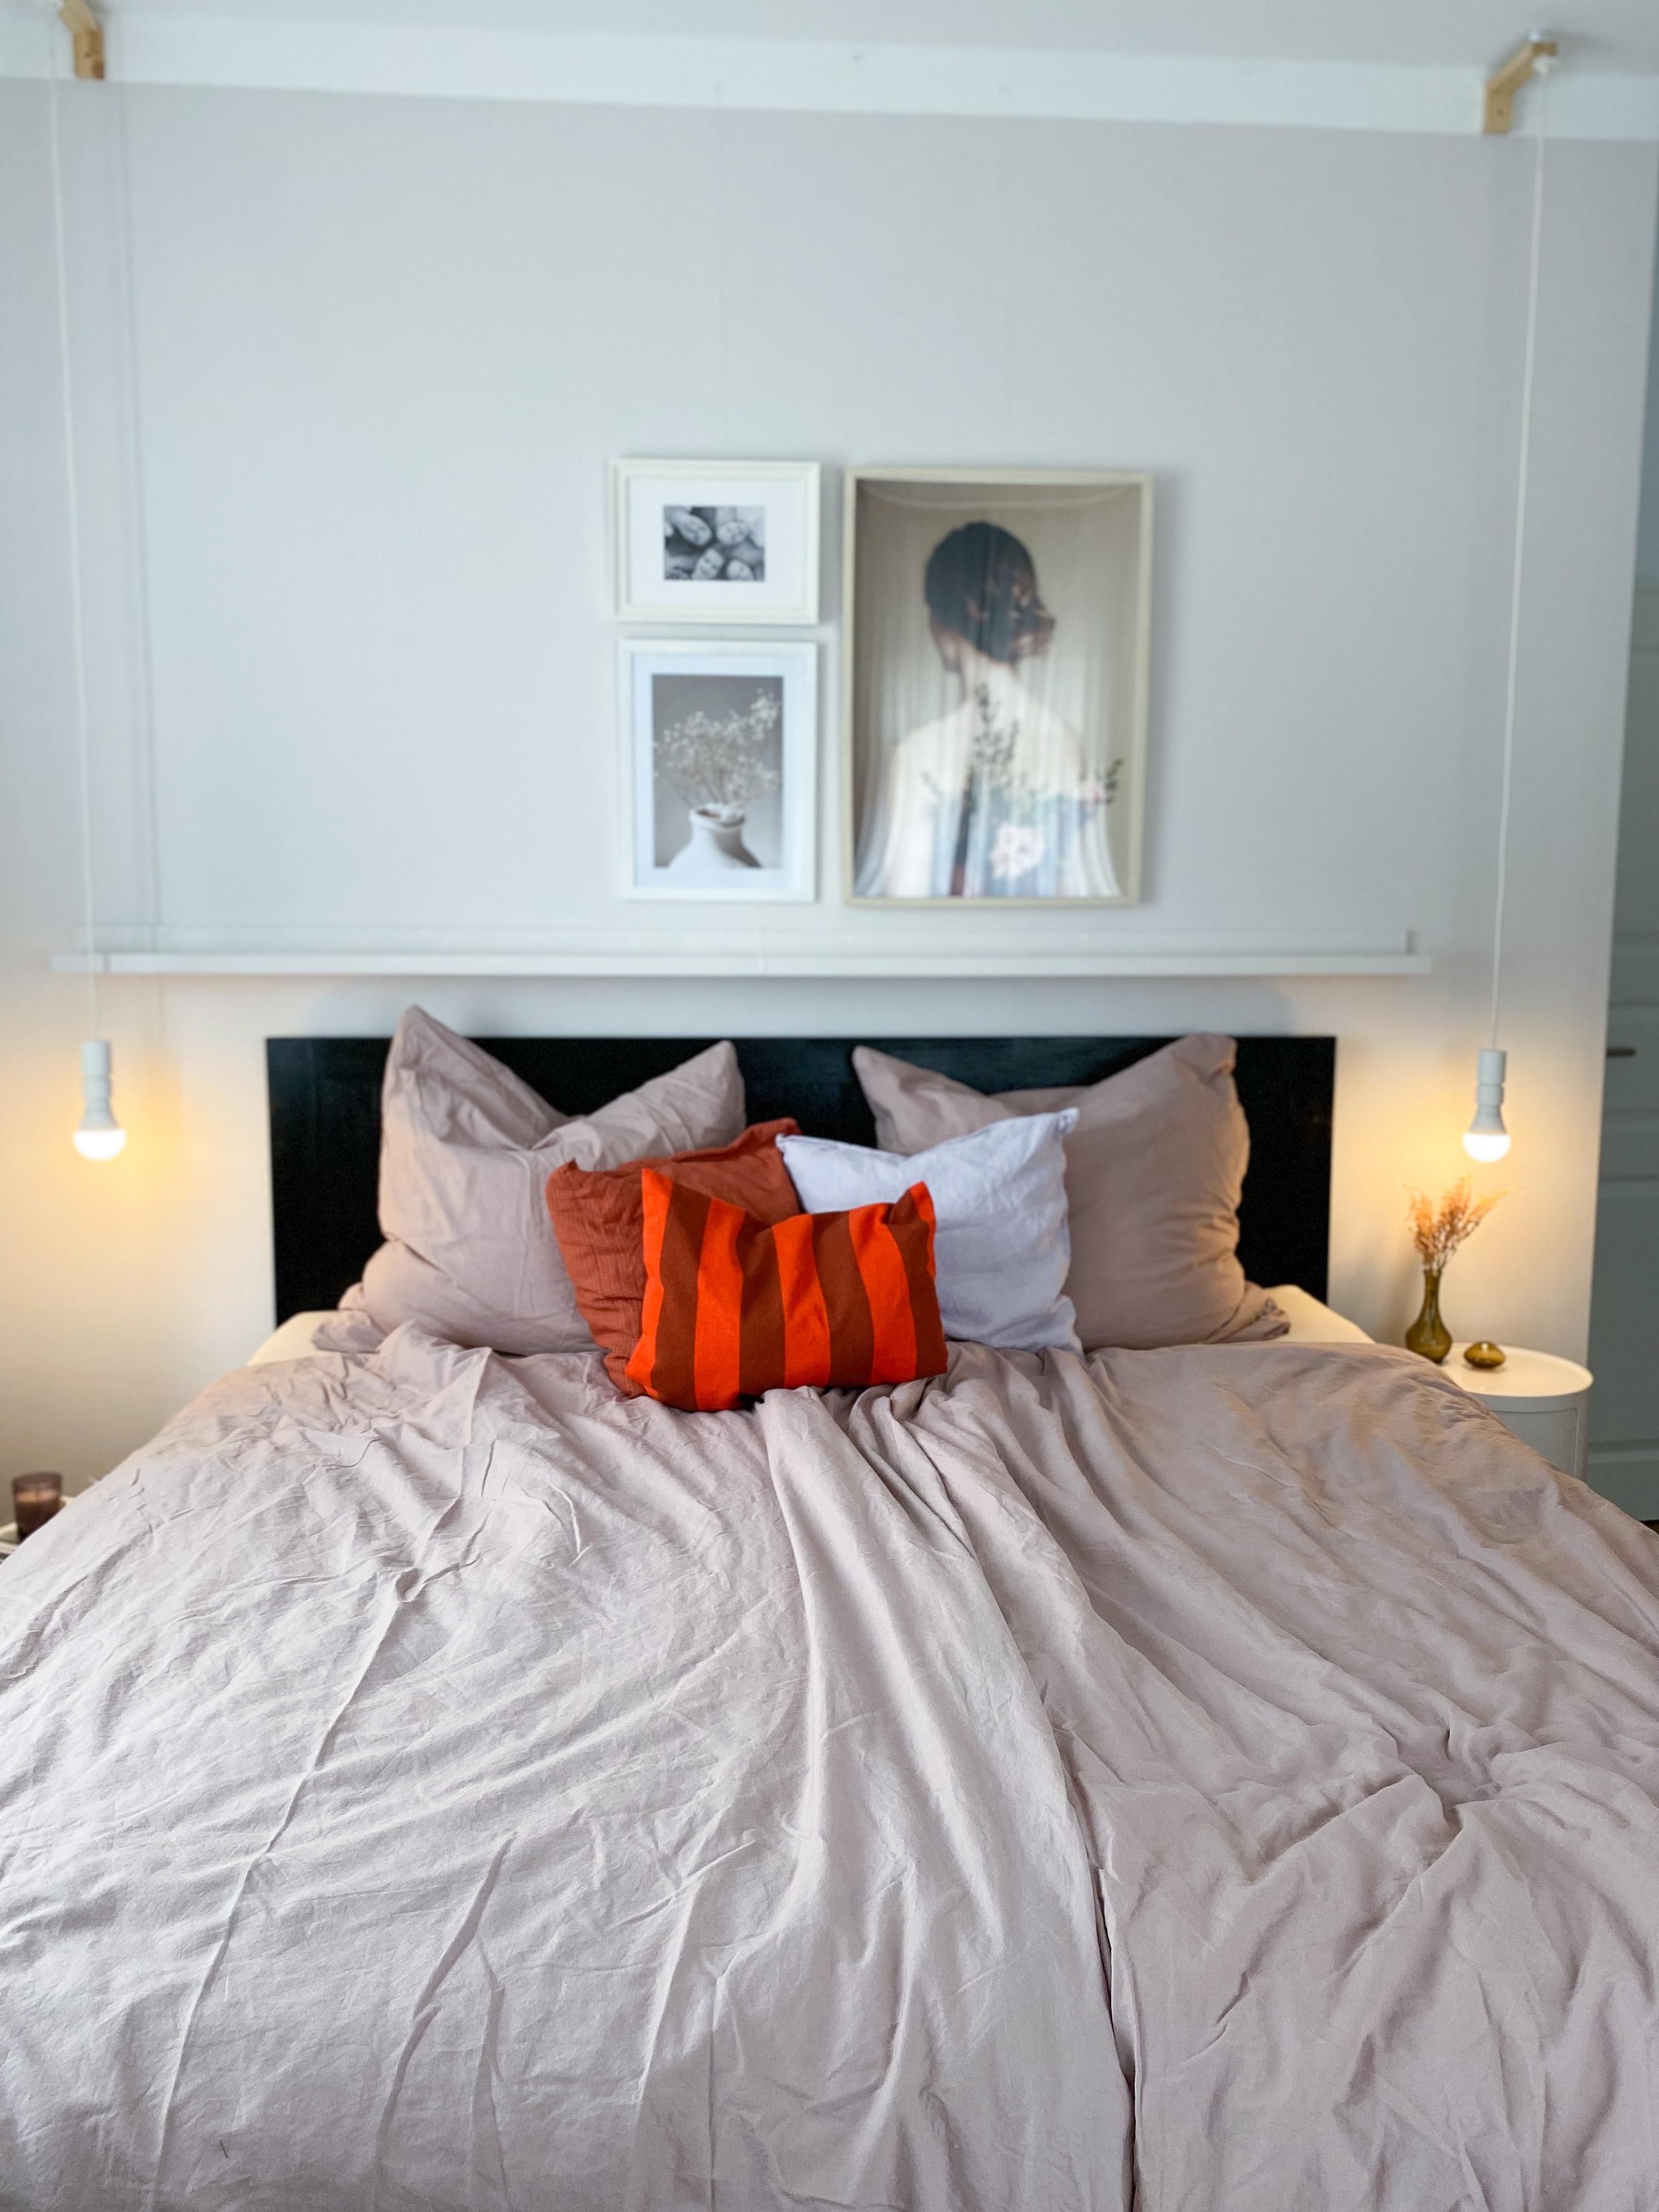 #schlafzimmer #livingchallenge warme herbsttöne fürs Schlafzimmer, damit man auch schnell im Schlaf versinkt😴😴